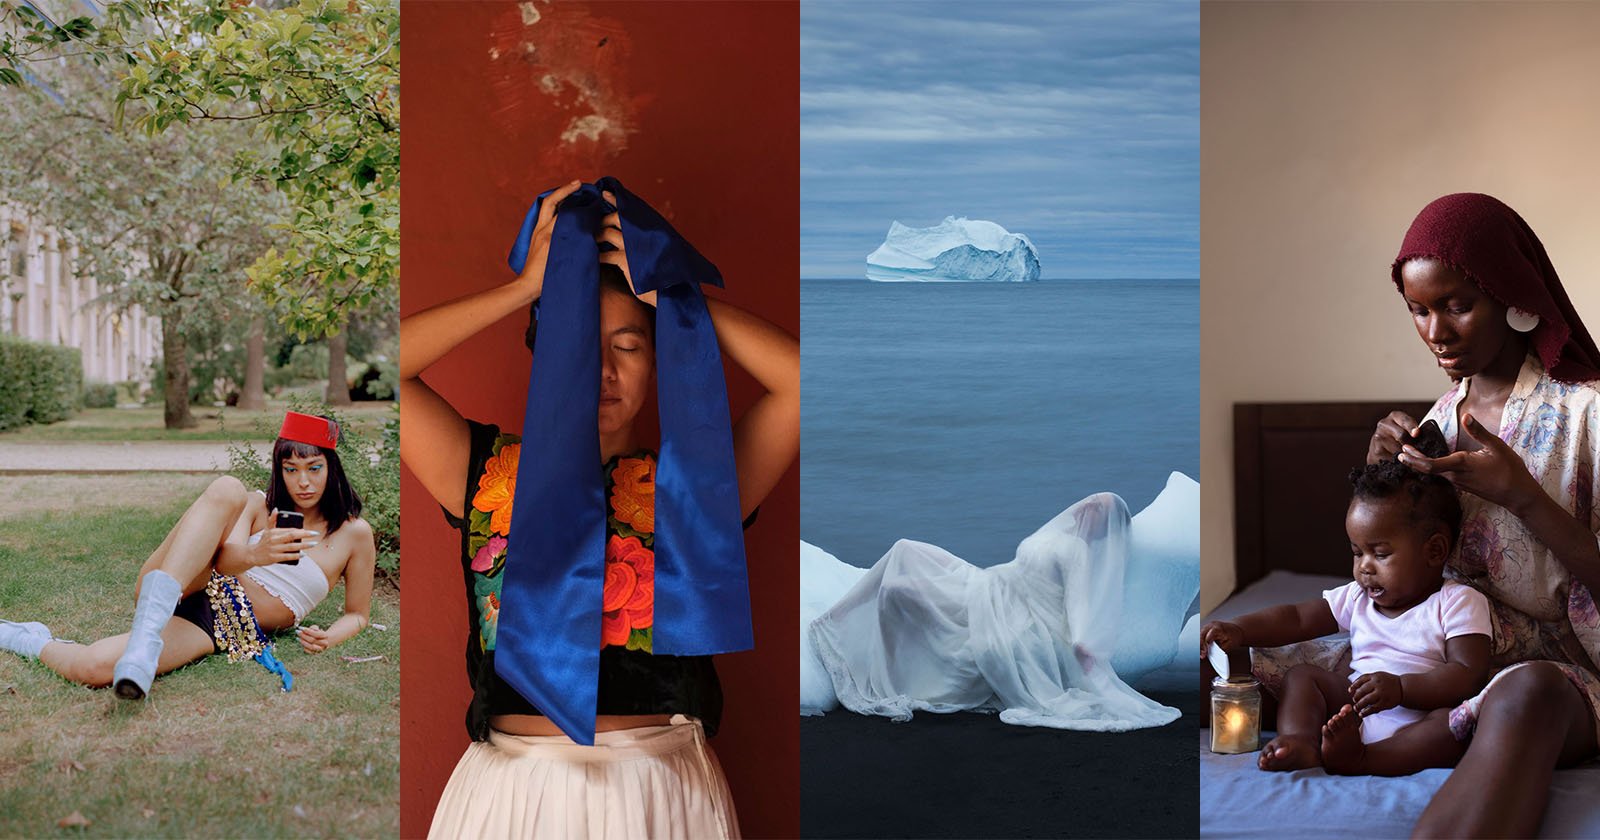  leica women foto project award winners celebrate feminine 